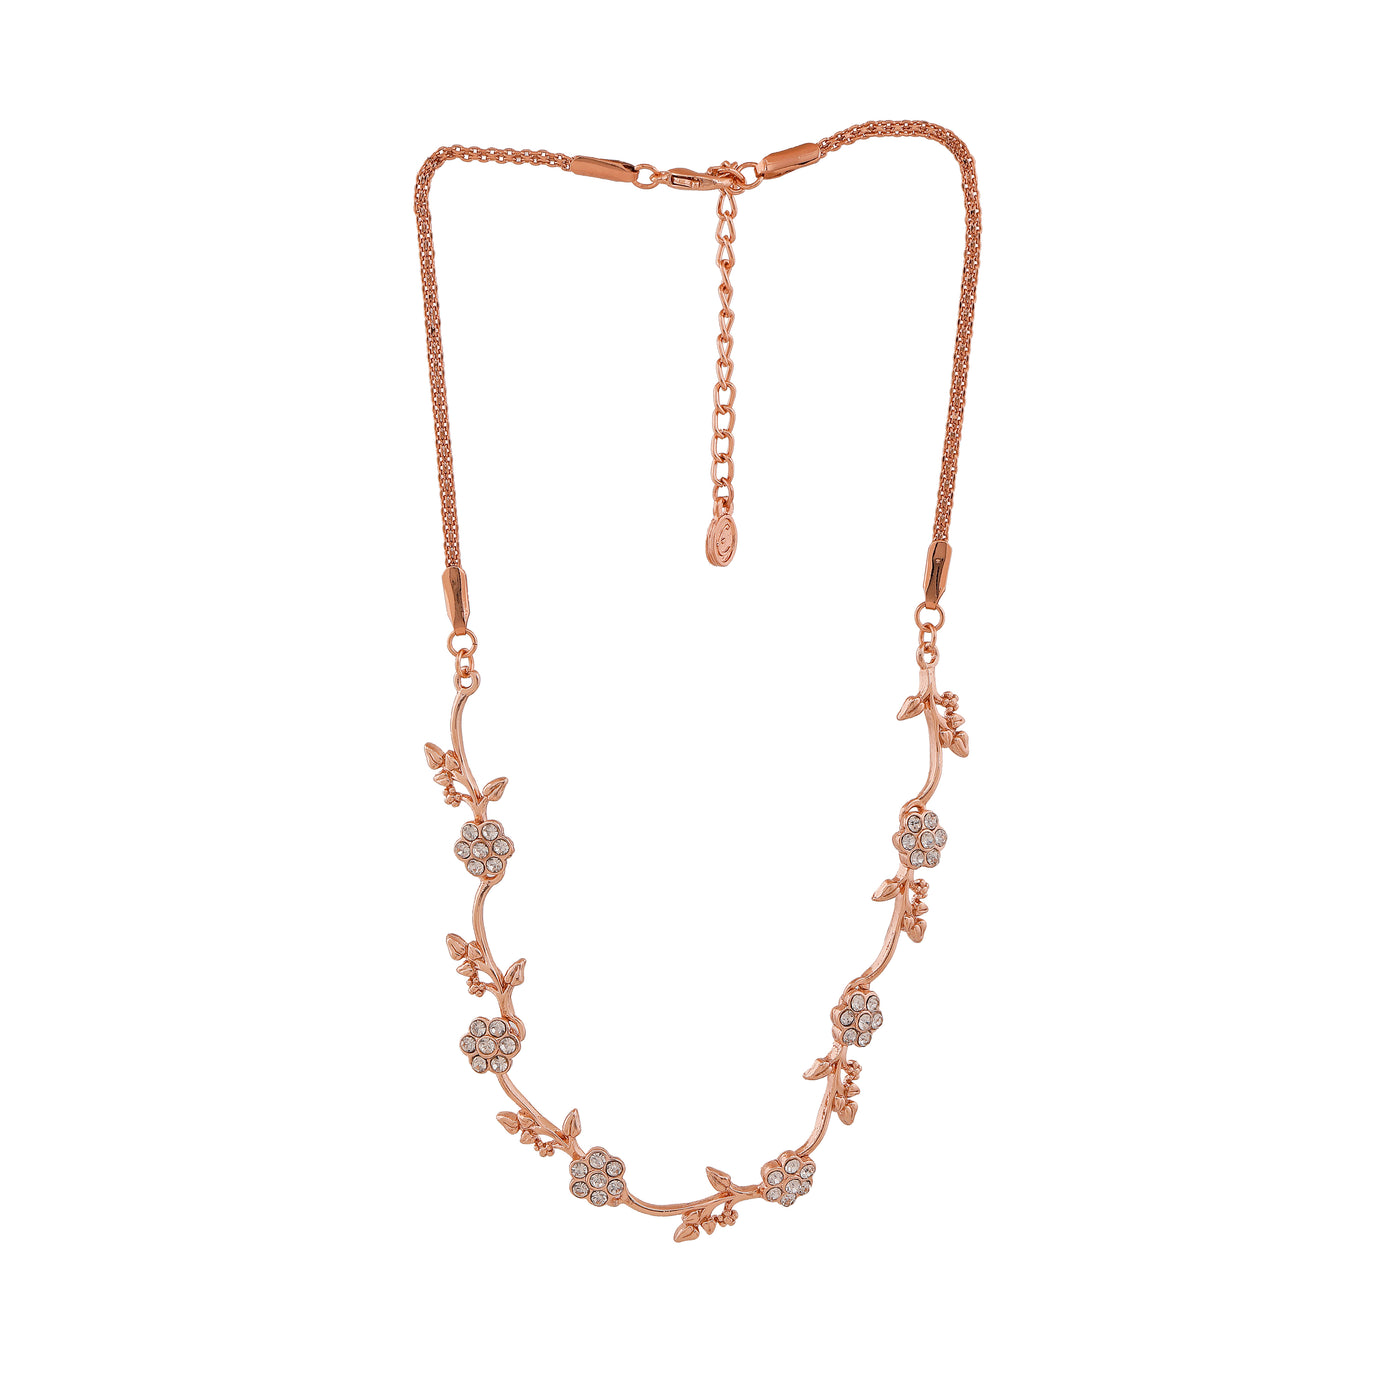 Estele Rose Gold Plated Flower Designer Necklace Set with Crystals for Women